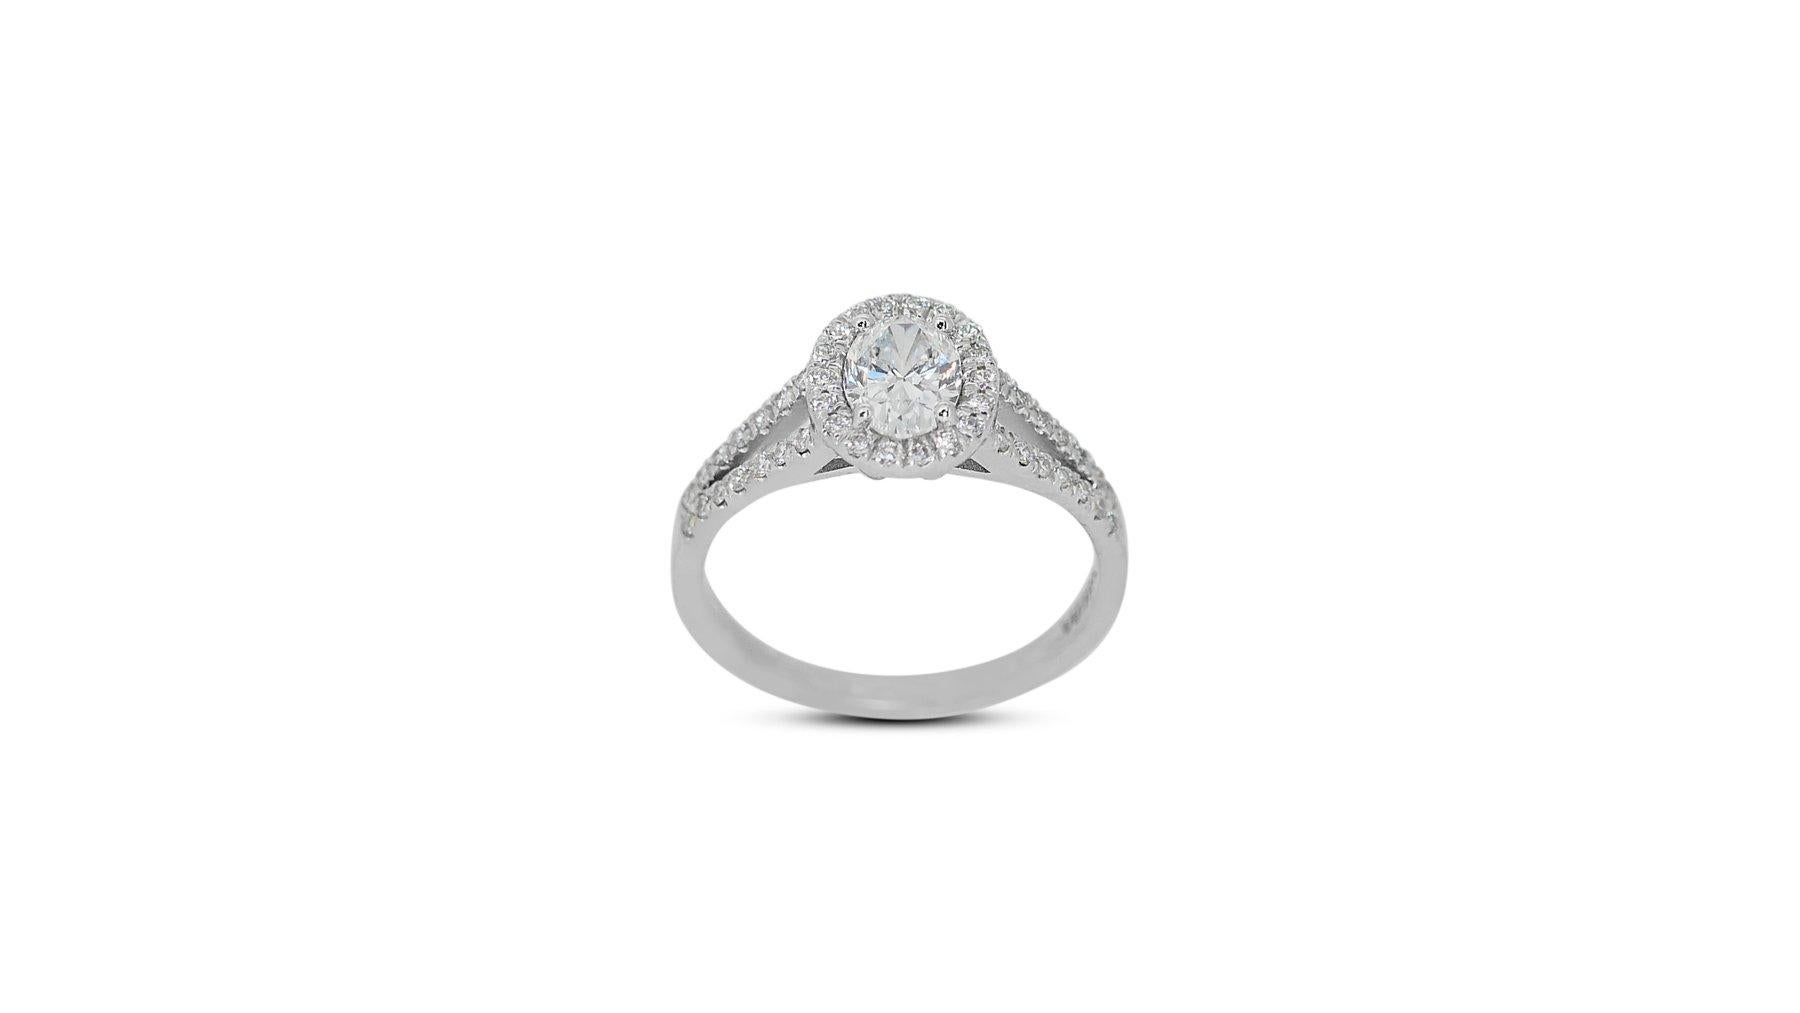 Glamouröser 1,30 Karat ovaler Diamant-Halo-Ring aus 18 Karat Weißgold - GIA zertifiziert

Erhöhen Sie Ihren Stil mit diesem exquisiten Halo-Ring aus 18 Karat Weißgold mit einem atemberaubenden ovalen Diamanten von 1,00 Karat in der Mitte. Den